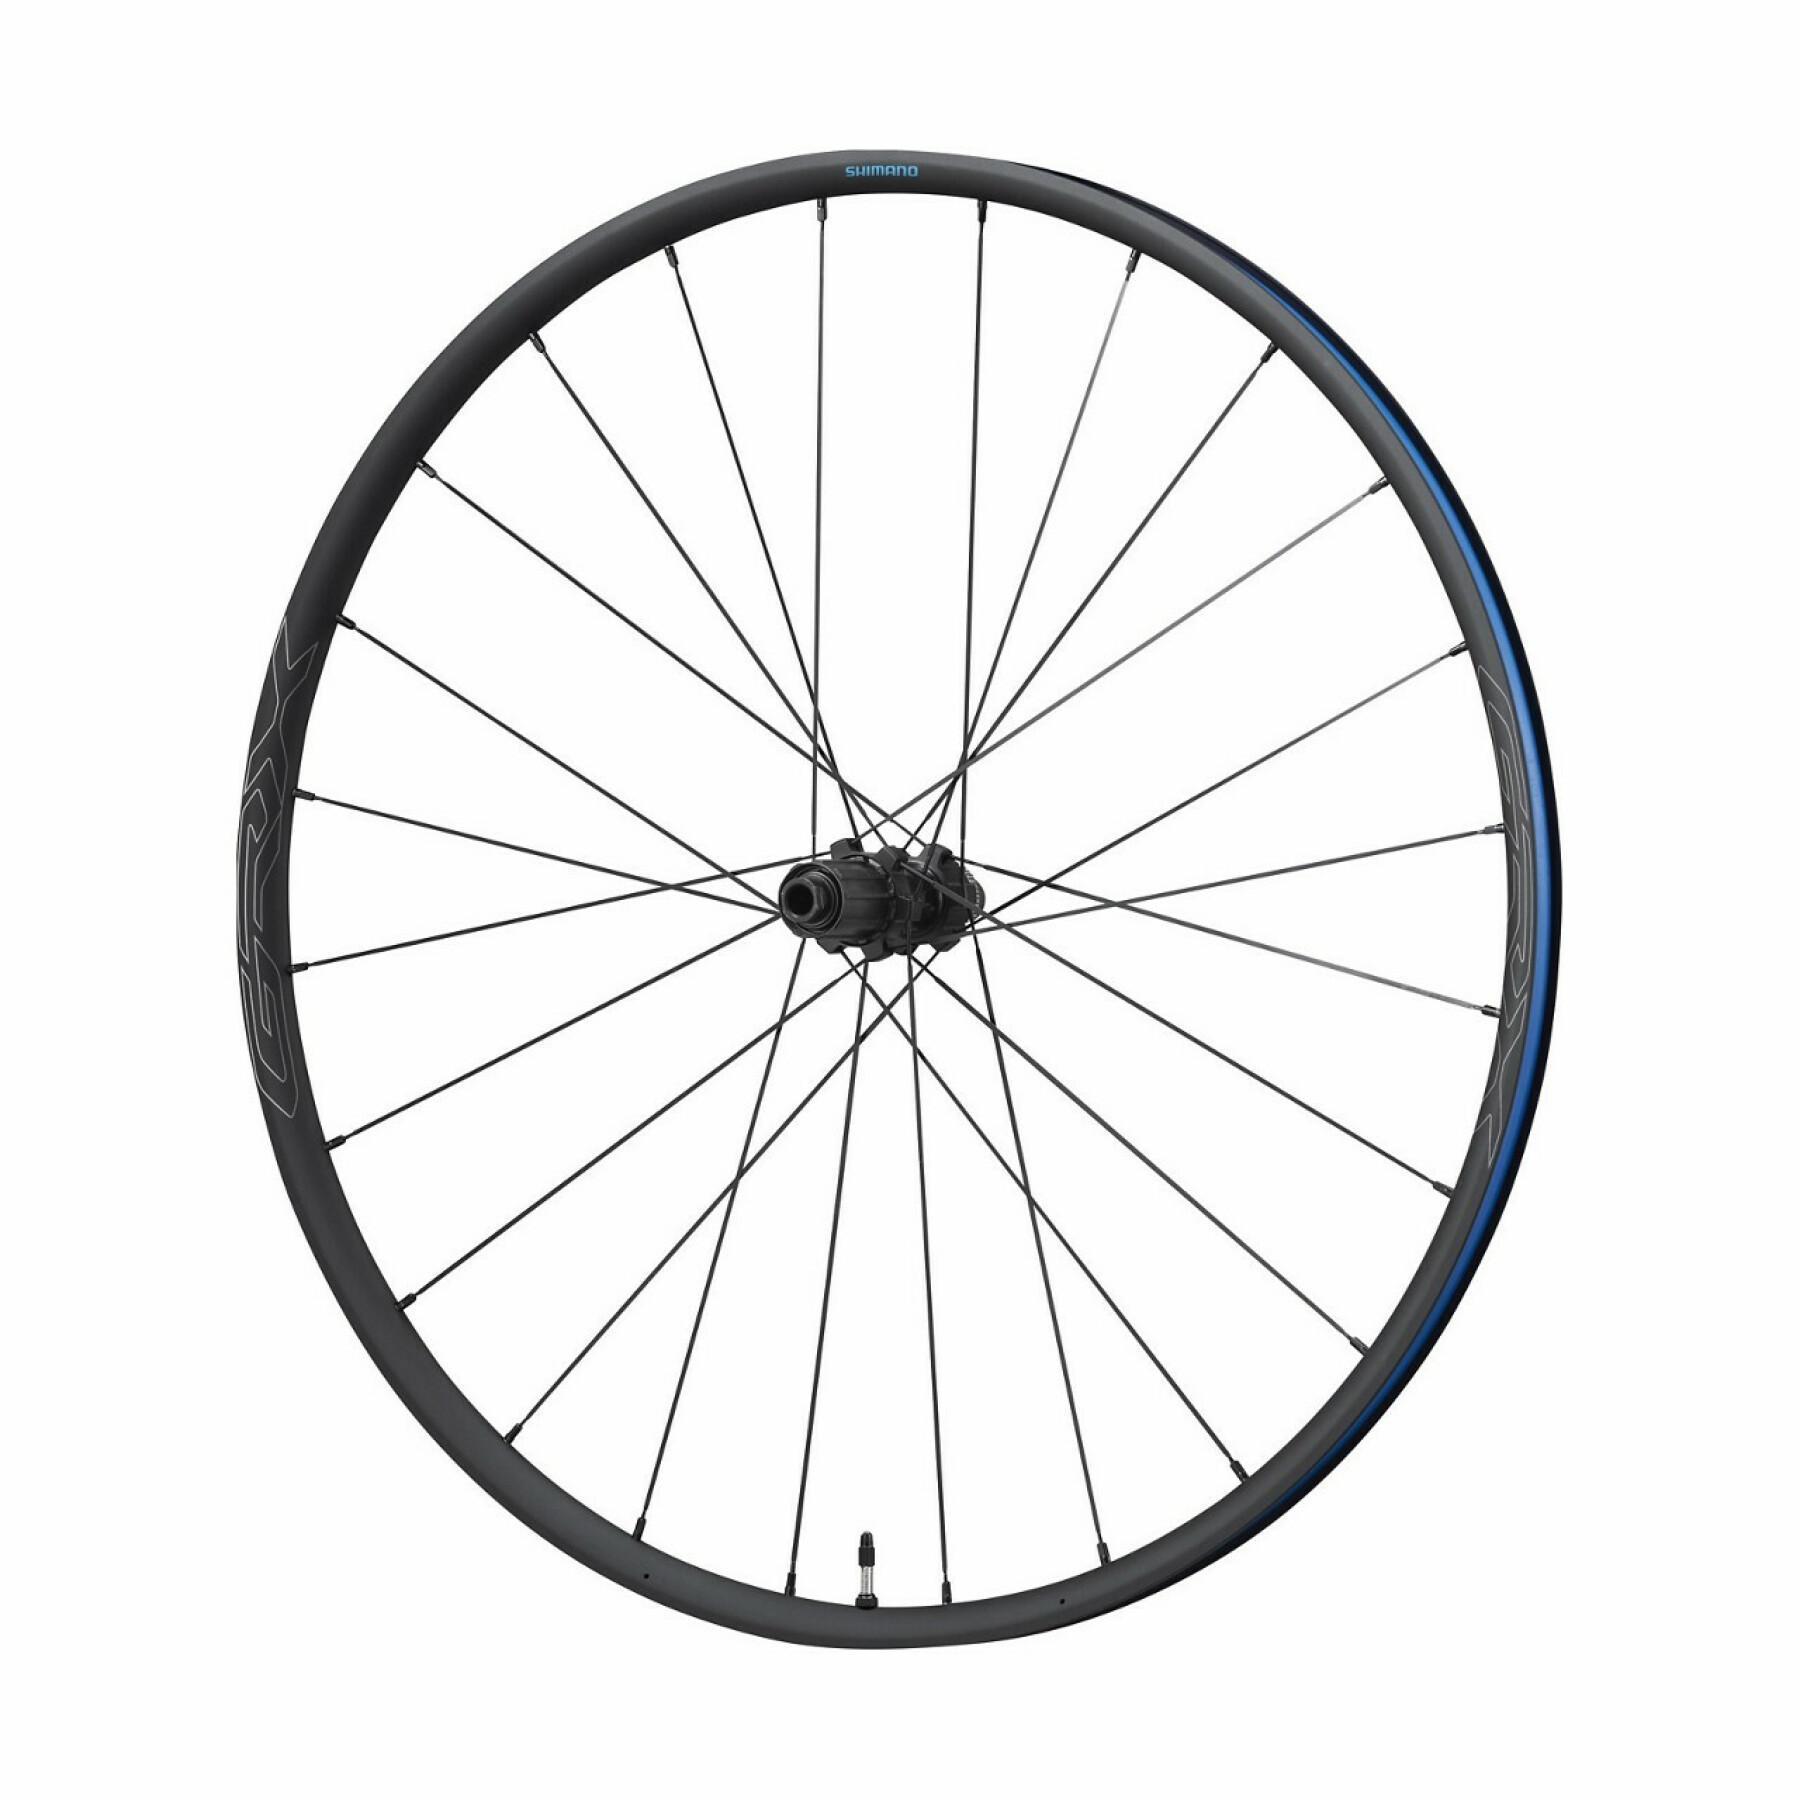 Roda de bicicleta 10/11v travão de disco fecho central Shimano GRX WH-RX570-TL-R12-700C 10/11 v